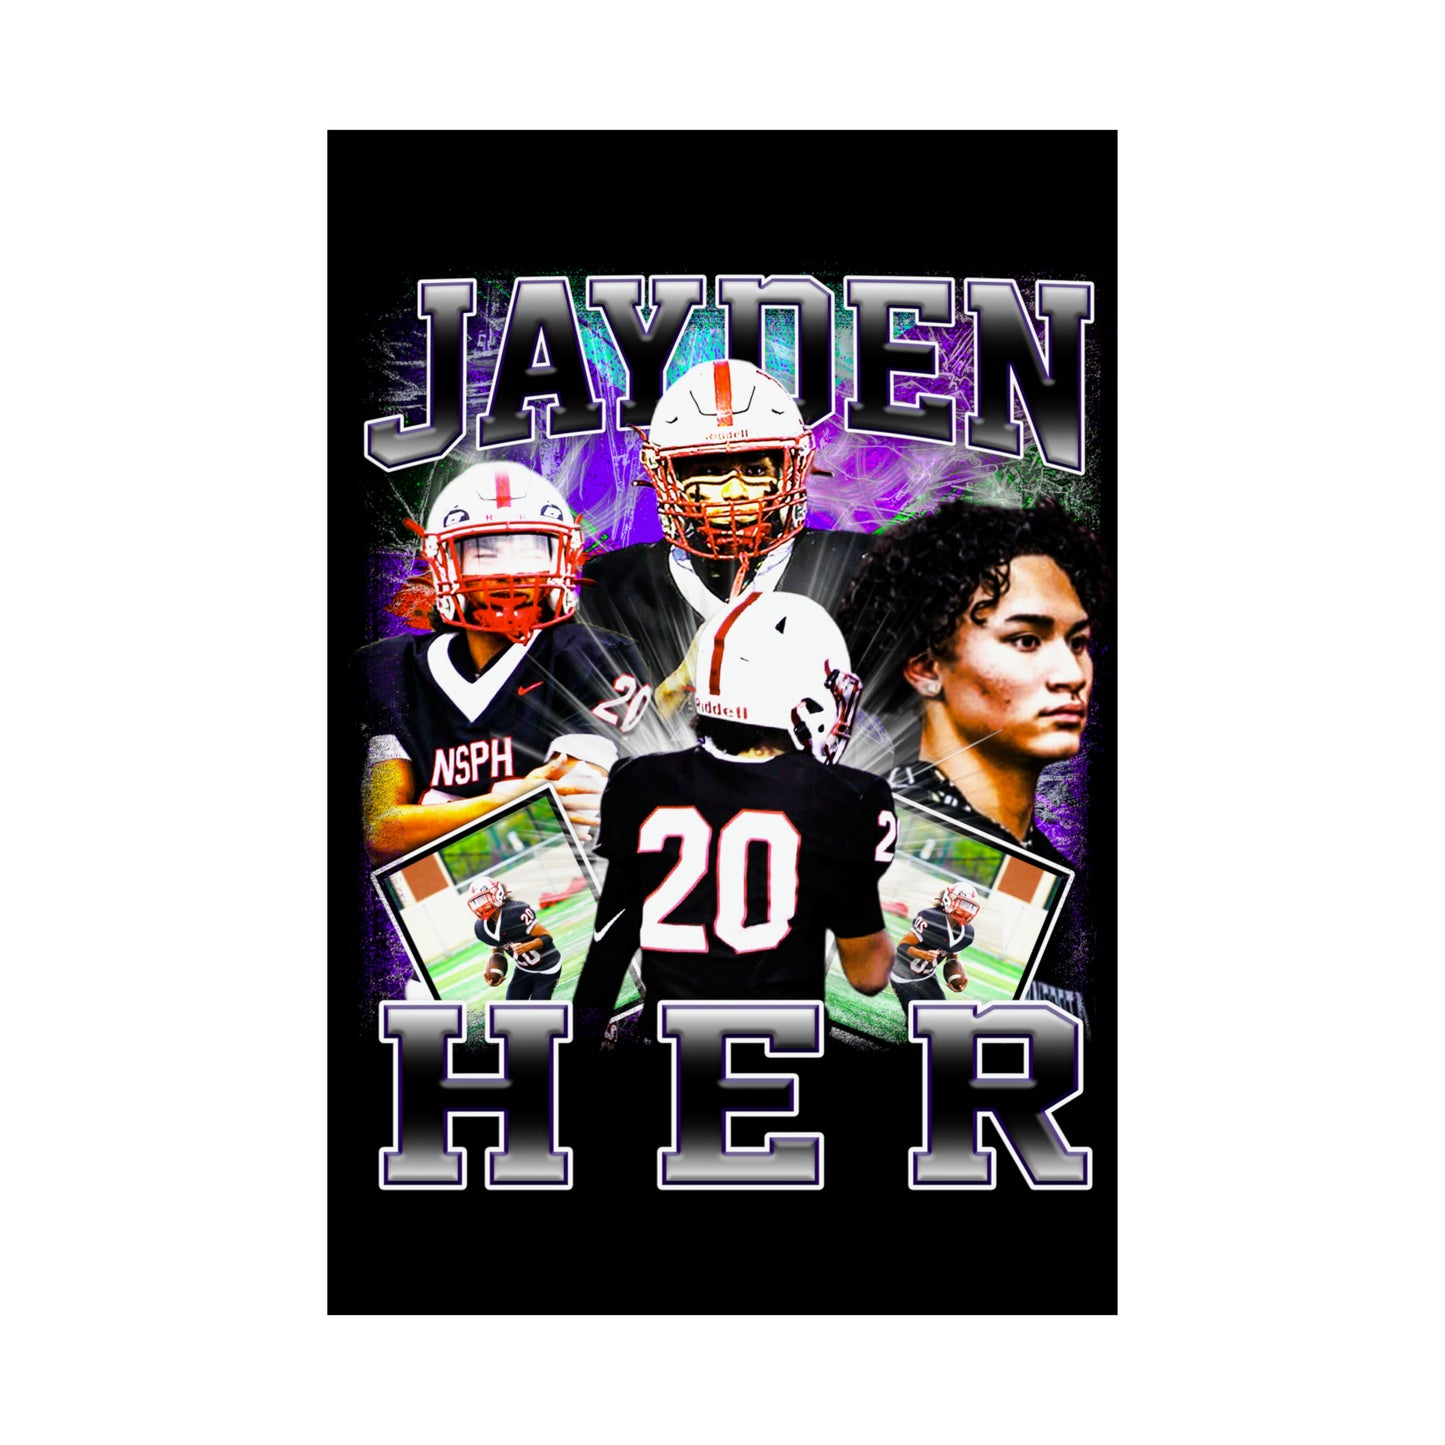 Jayden Her Poster